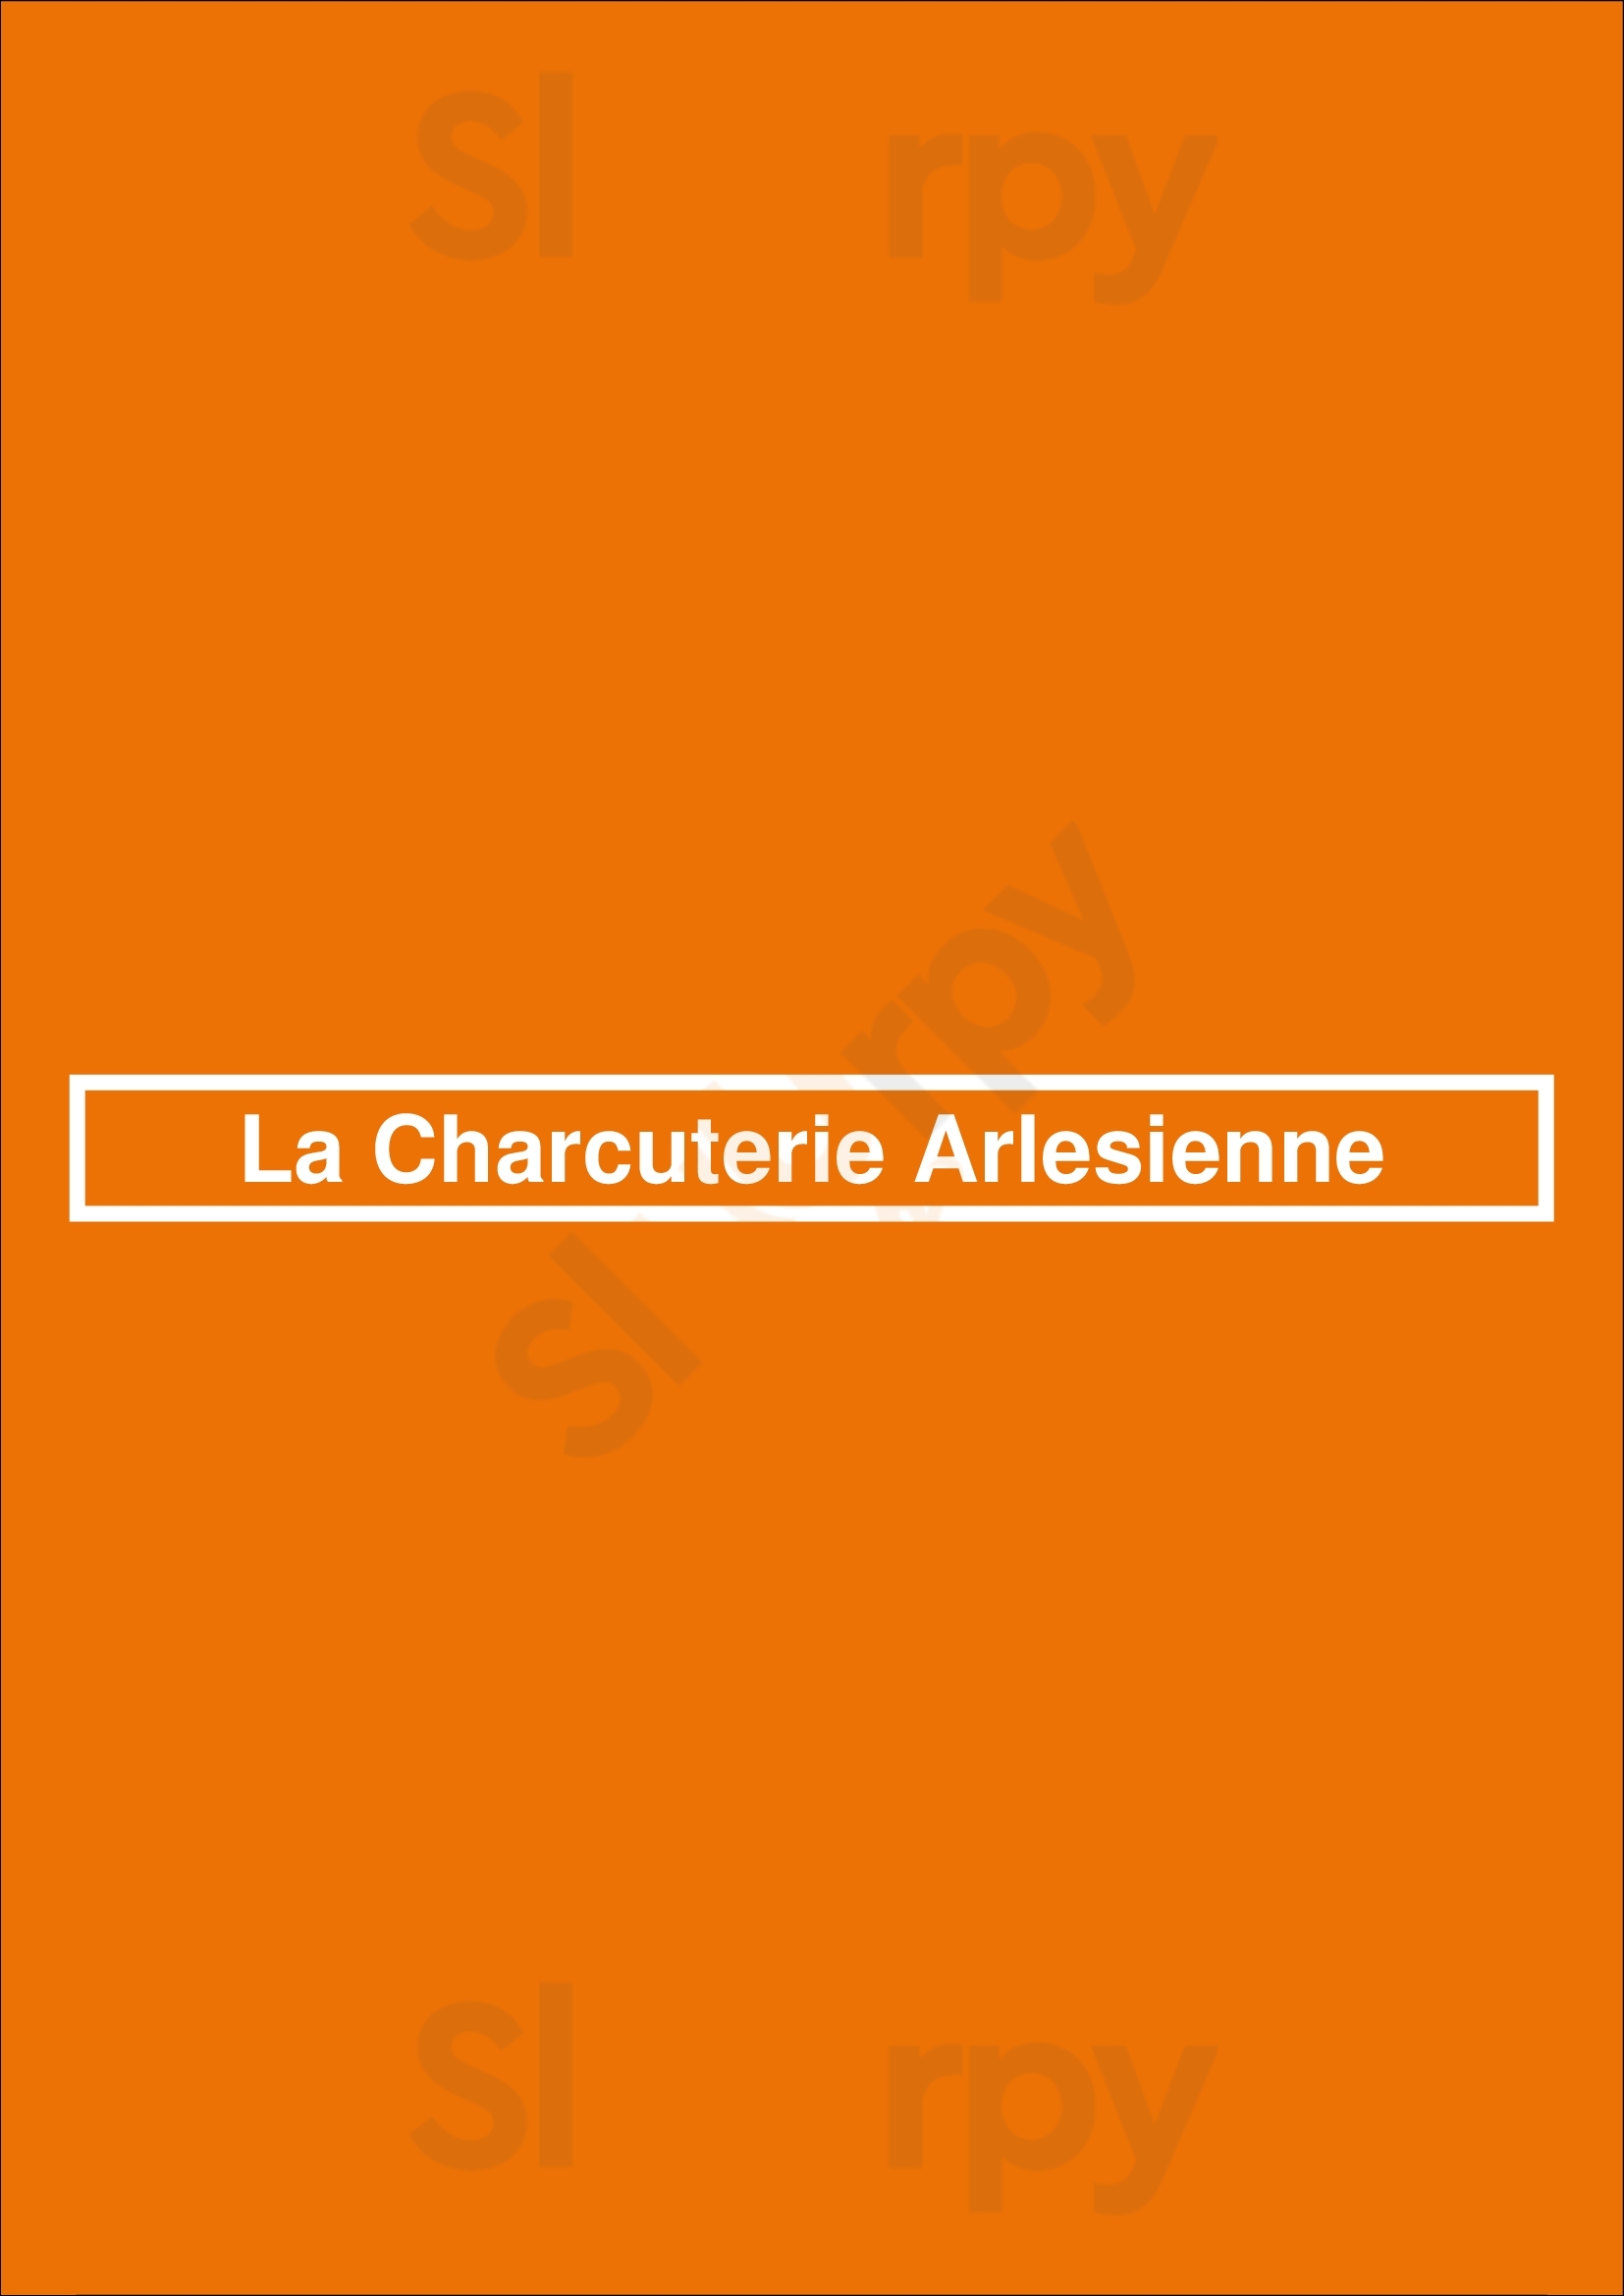 La Charcuterie Arlesienne Arles Menu - 1